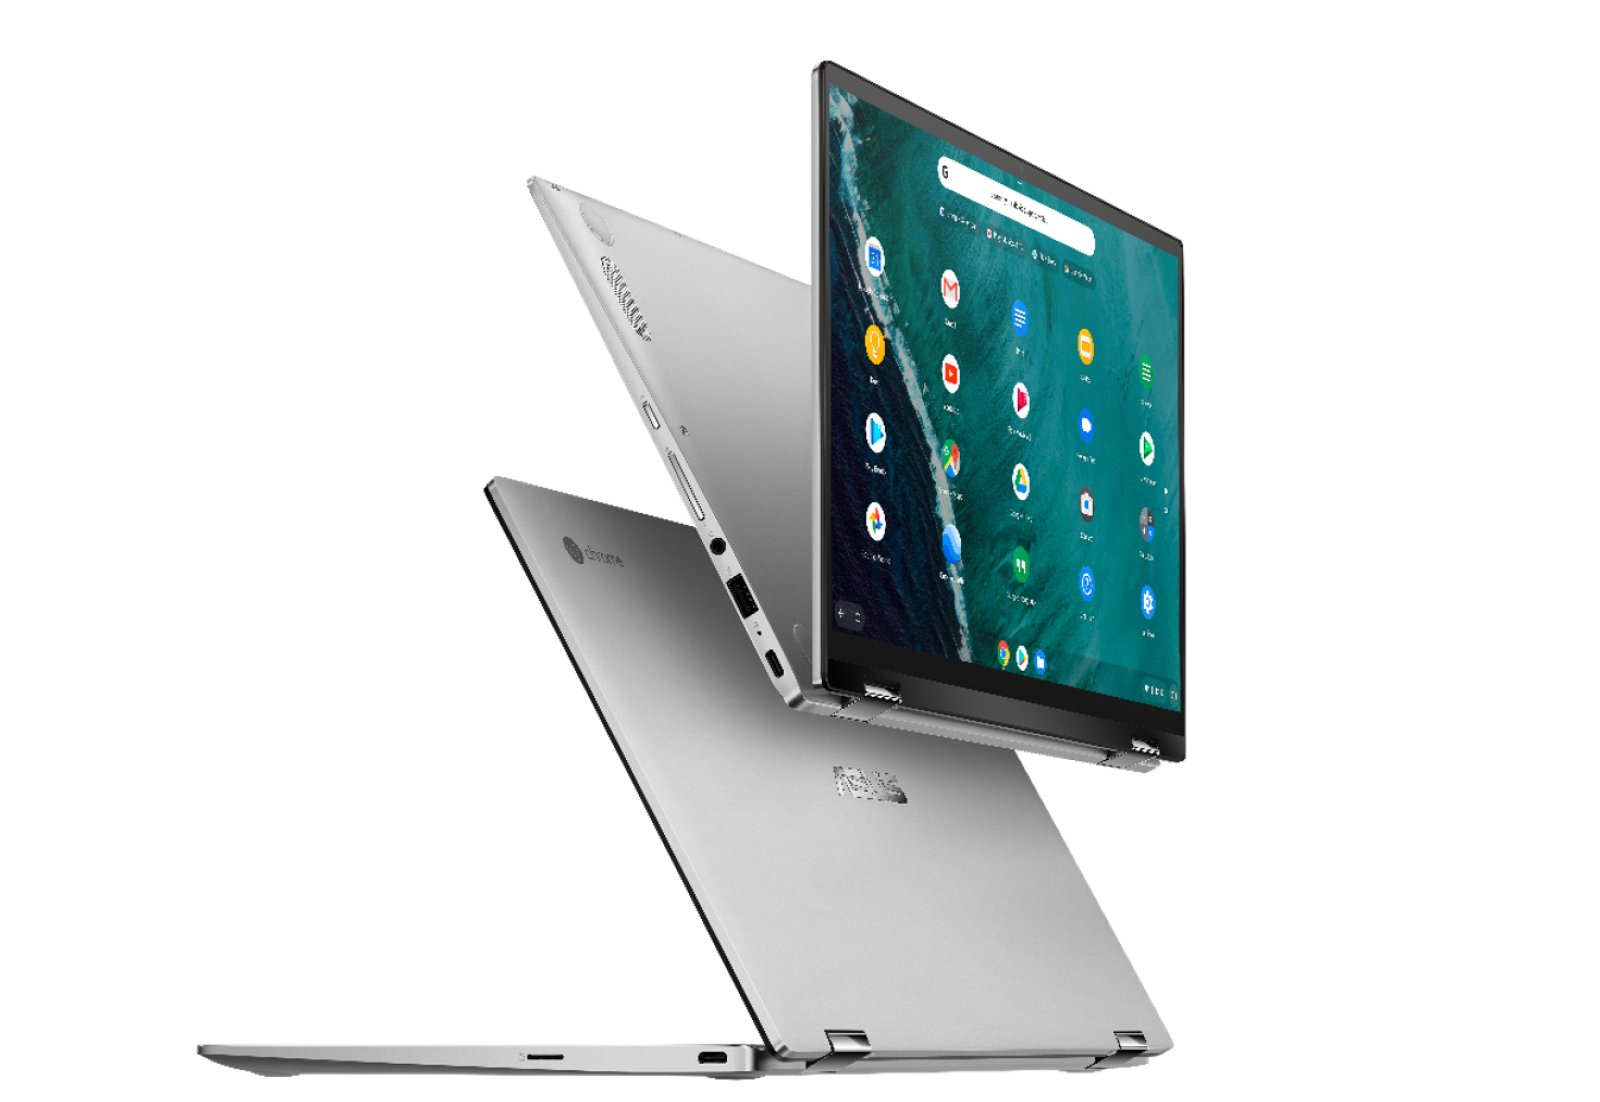 Asus VivoBook serisi güncellendi